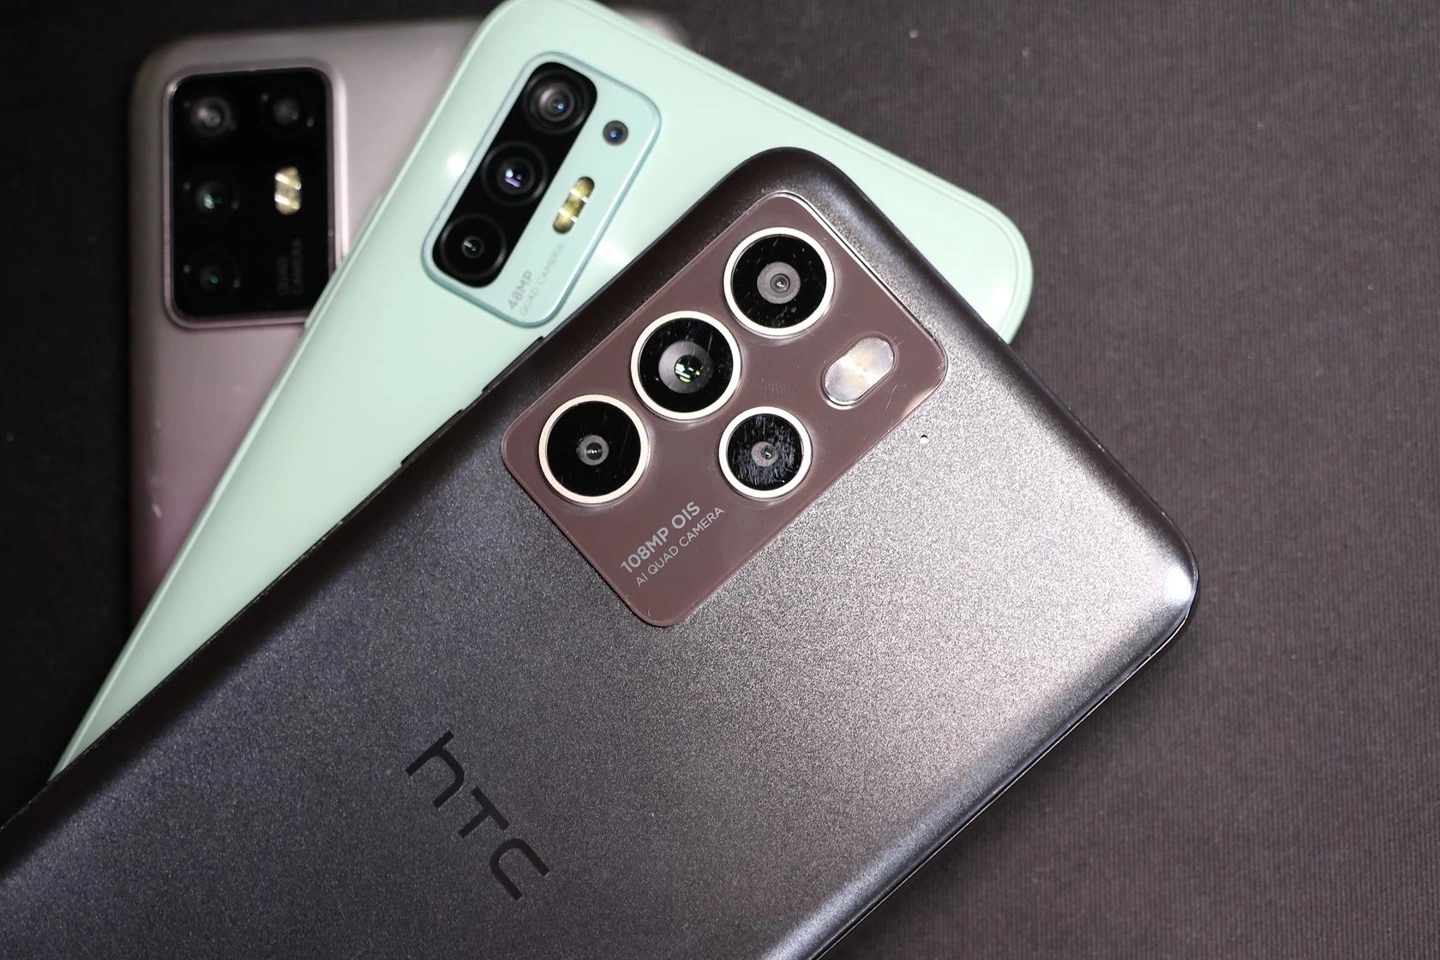 HTC U23 Pro 5G in Bildern: Smartphone mit 108 MP Kamera und Snapdragon 7 Gen 1 Prozessor